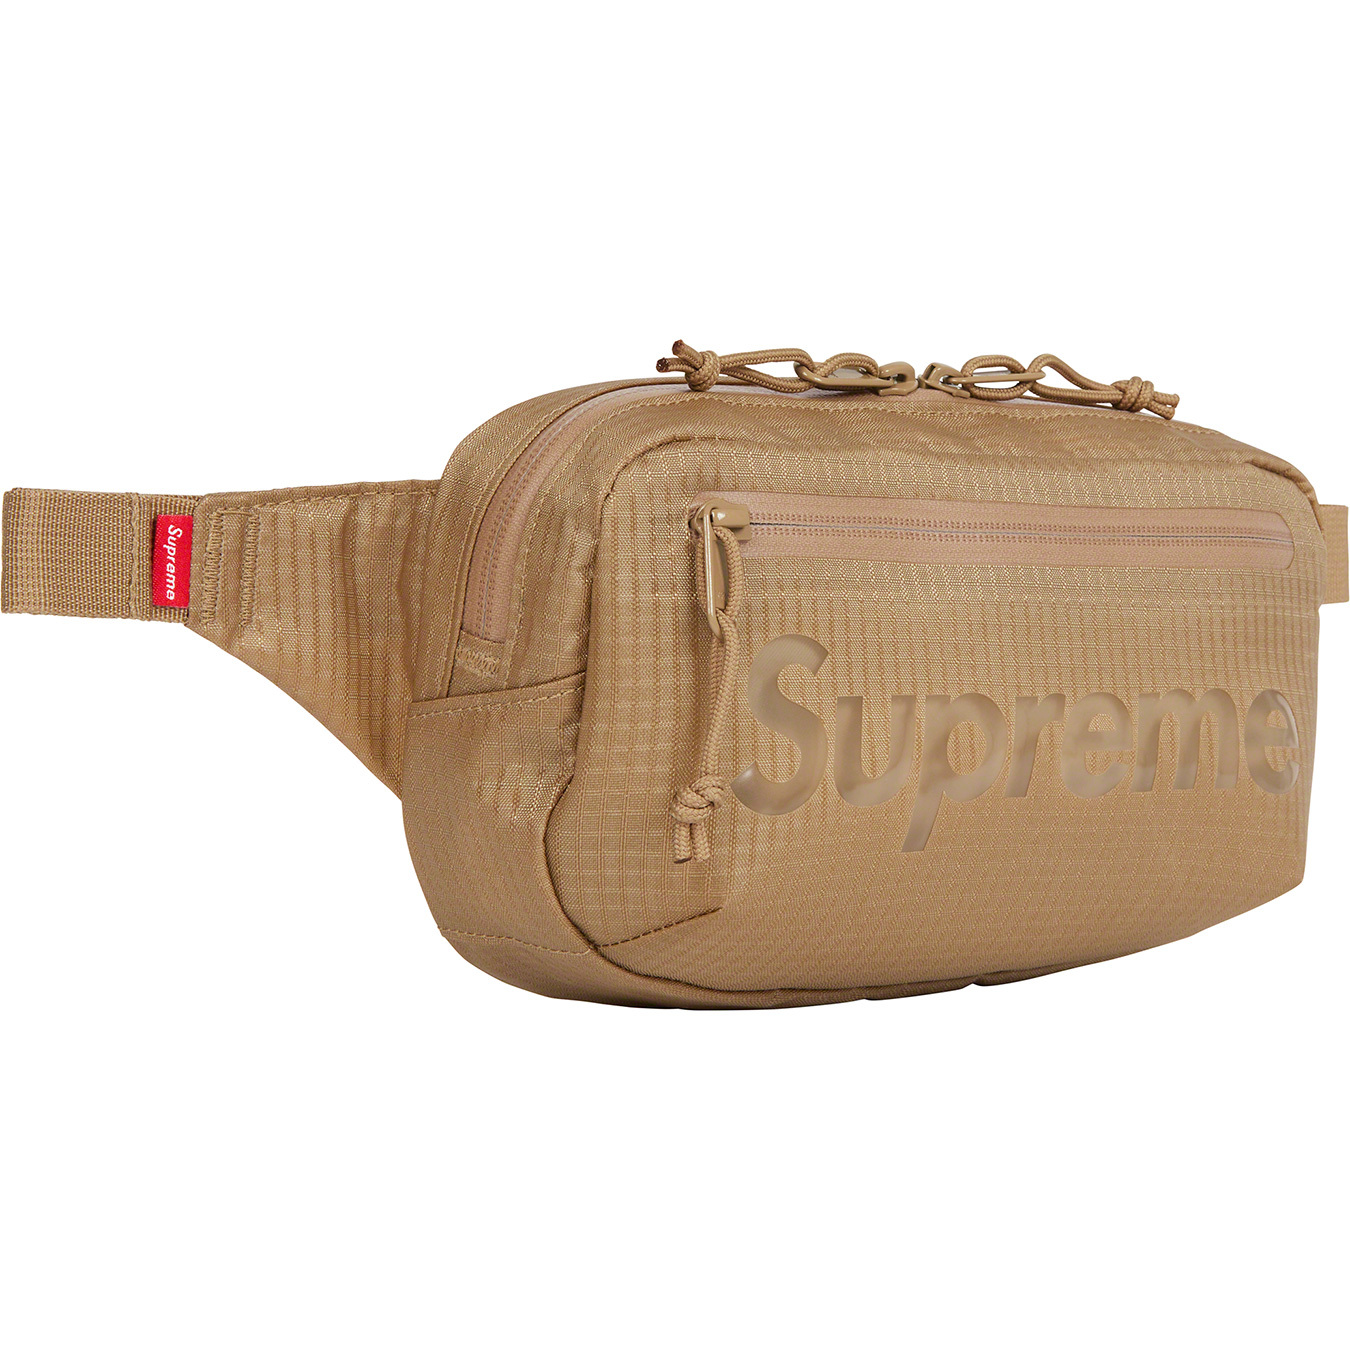 Supreme Supreme Waist Bag Tan SS21